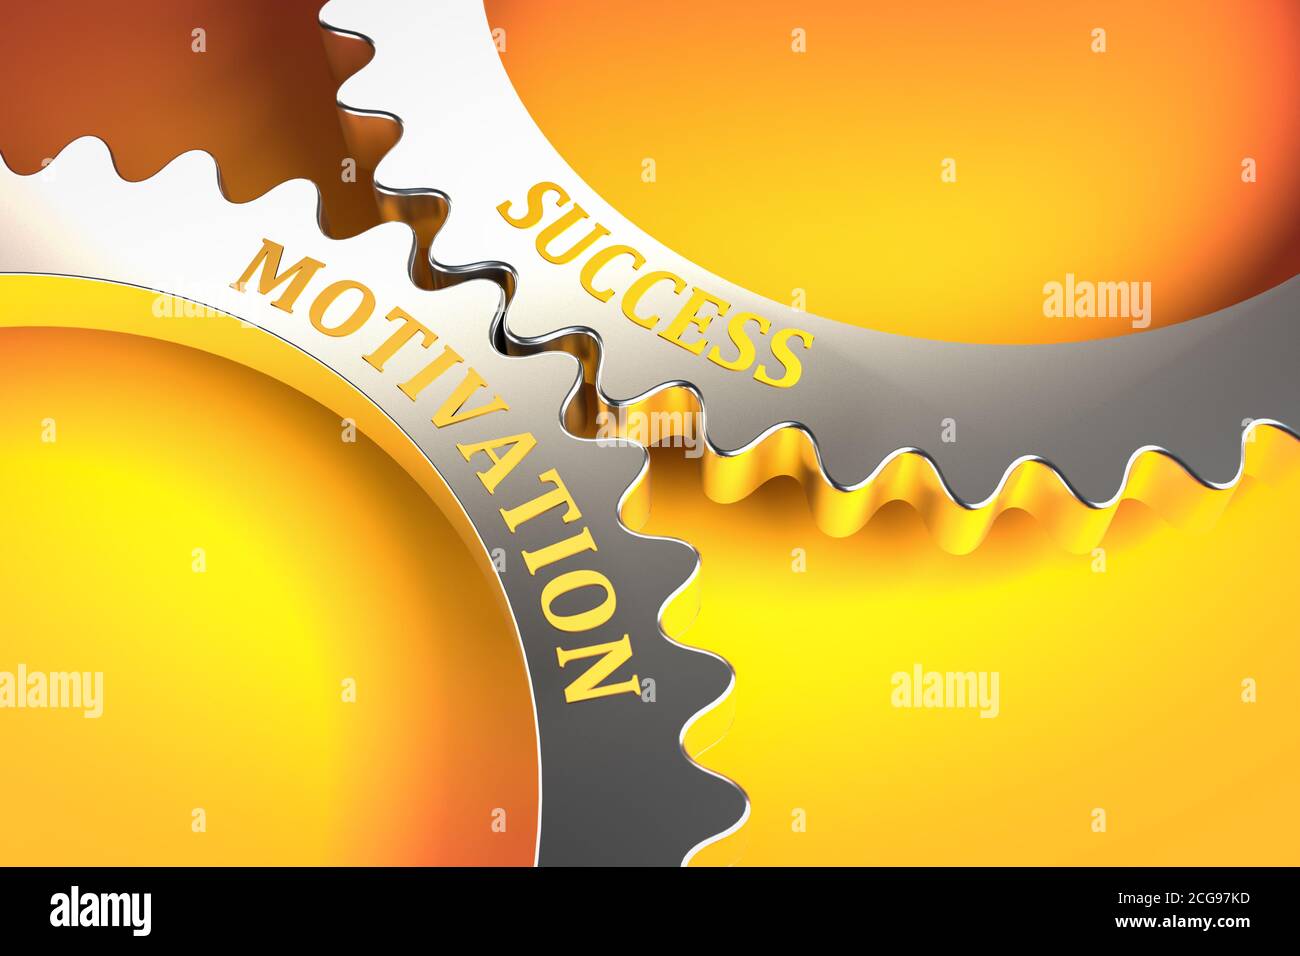 Geschäftskonzept: Erfolg durch Motivation der Mitarbeiter. Gute Motivation führt zum Erfolg. Zahnräder, die ineinander passen. Metapher. Stockfoto